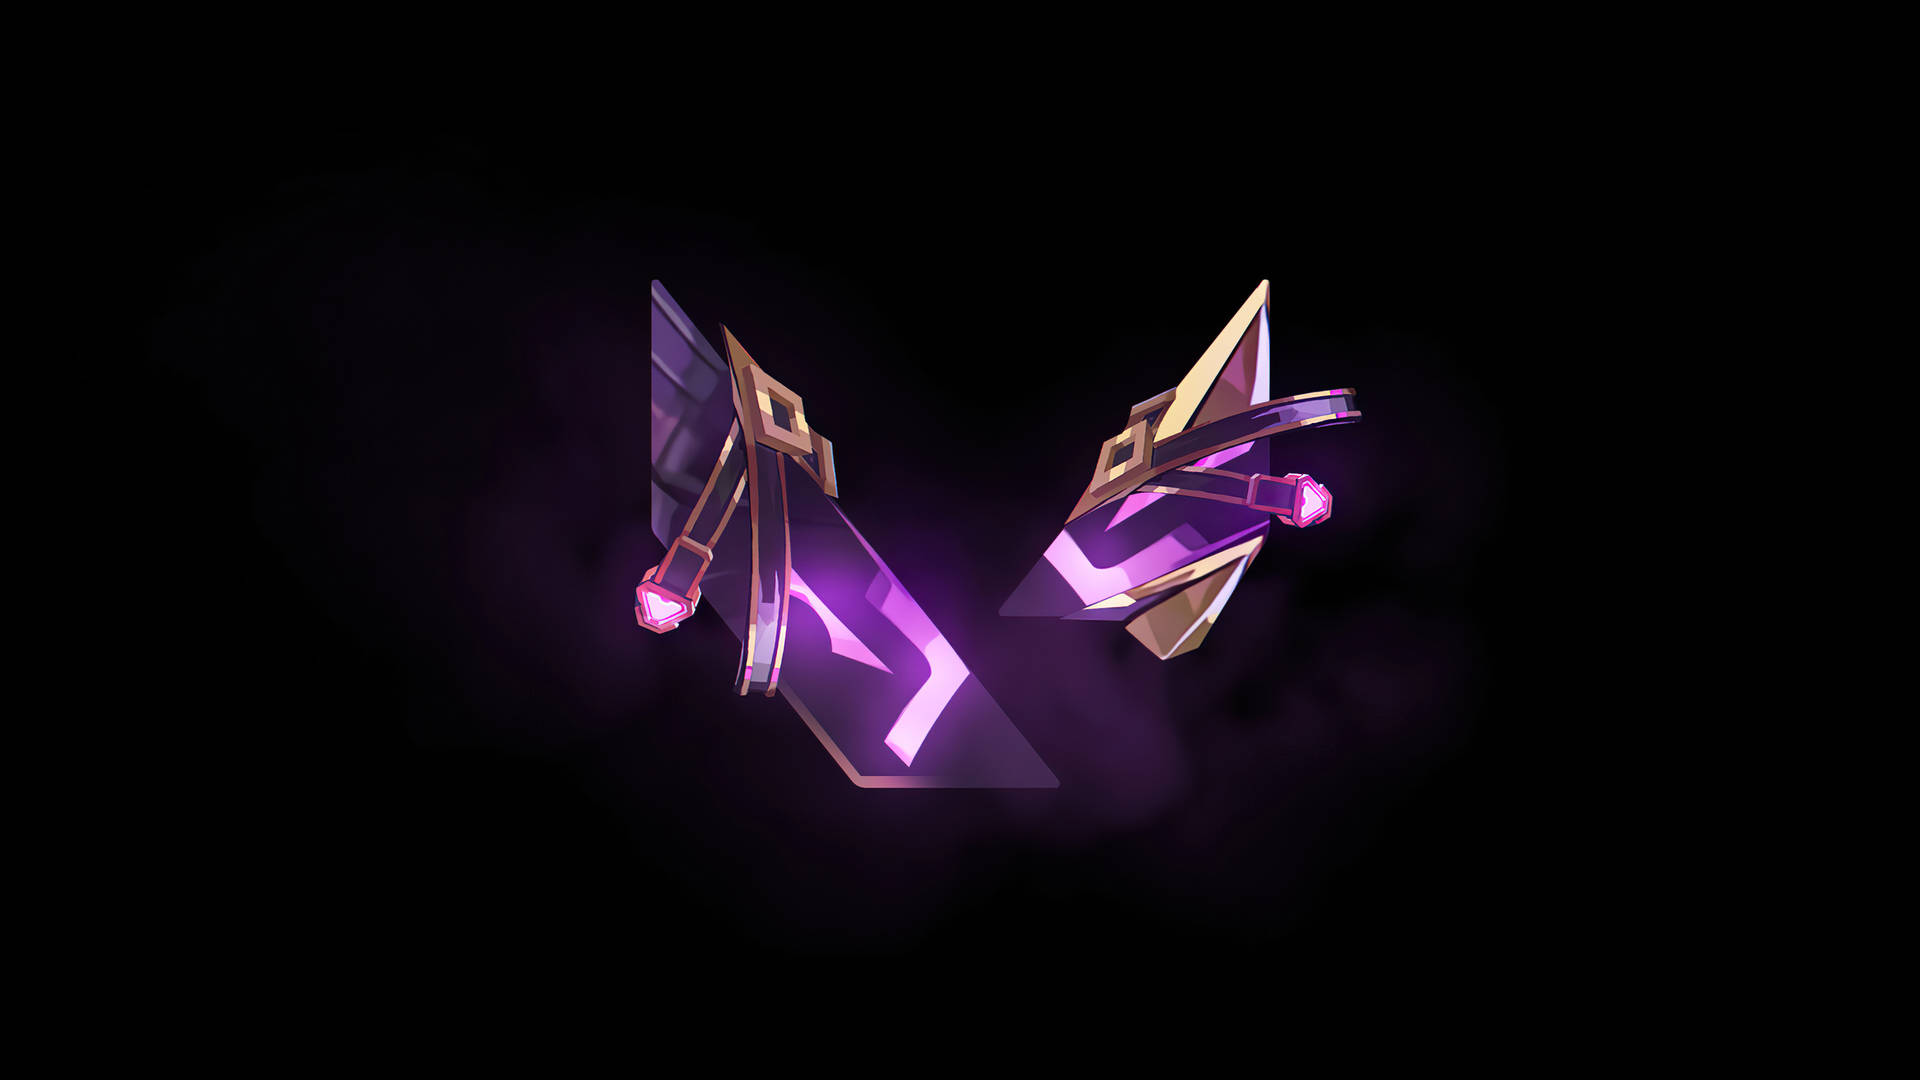 Reyna-inspired Logo Of Valorant 2k Background